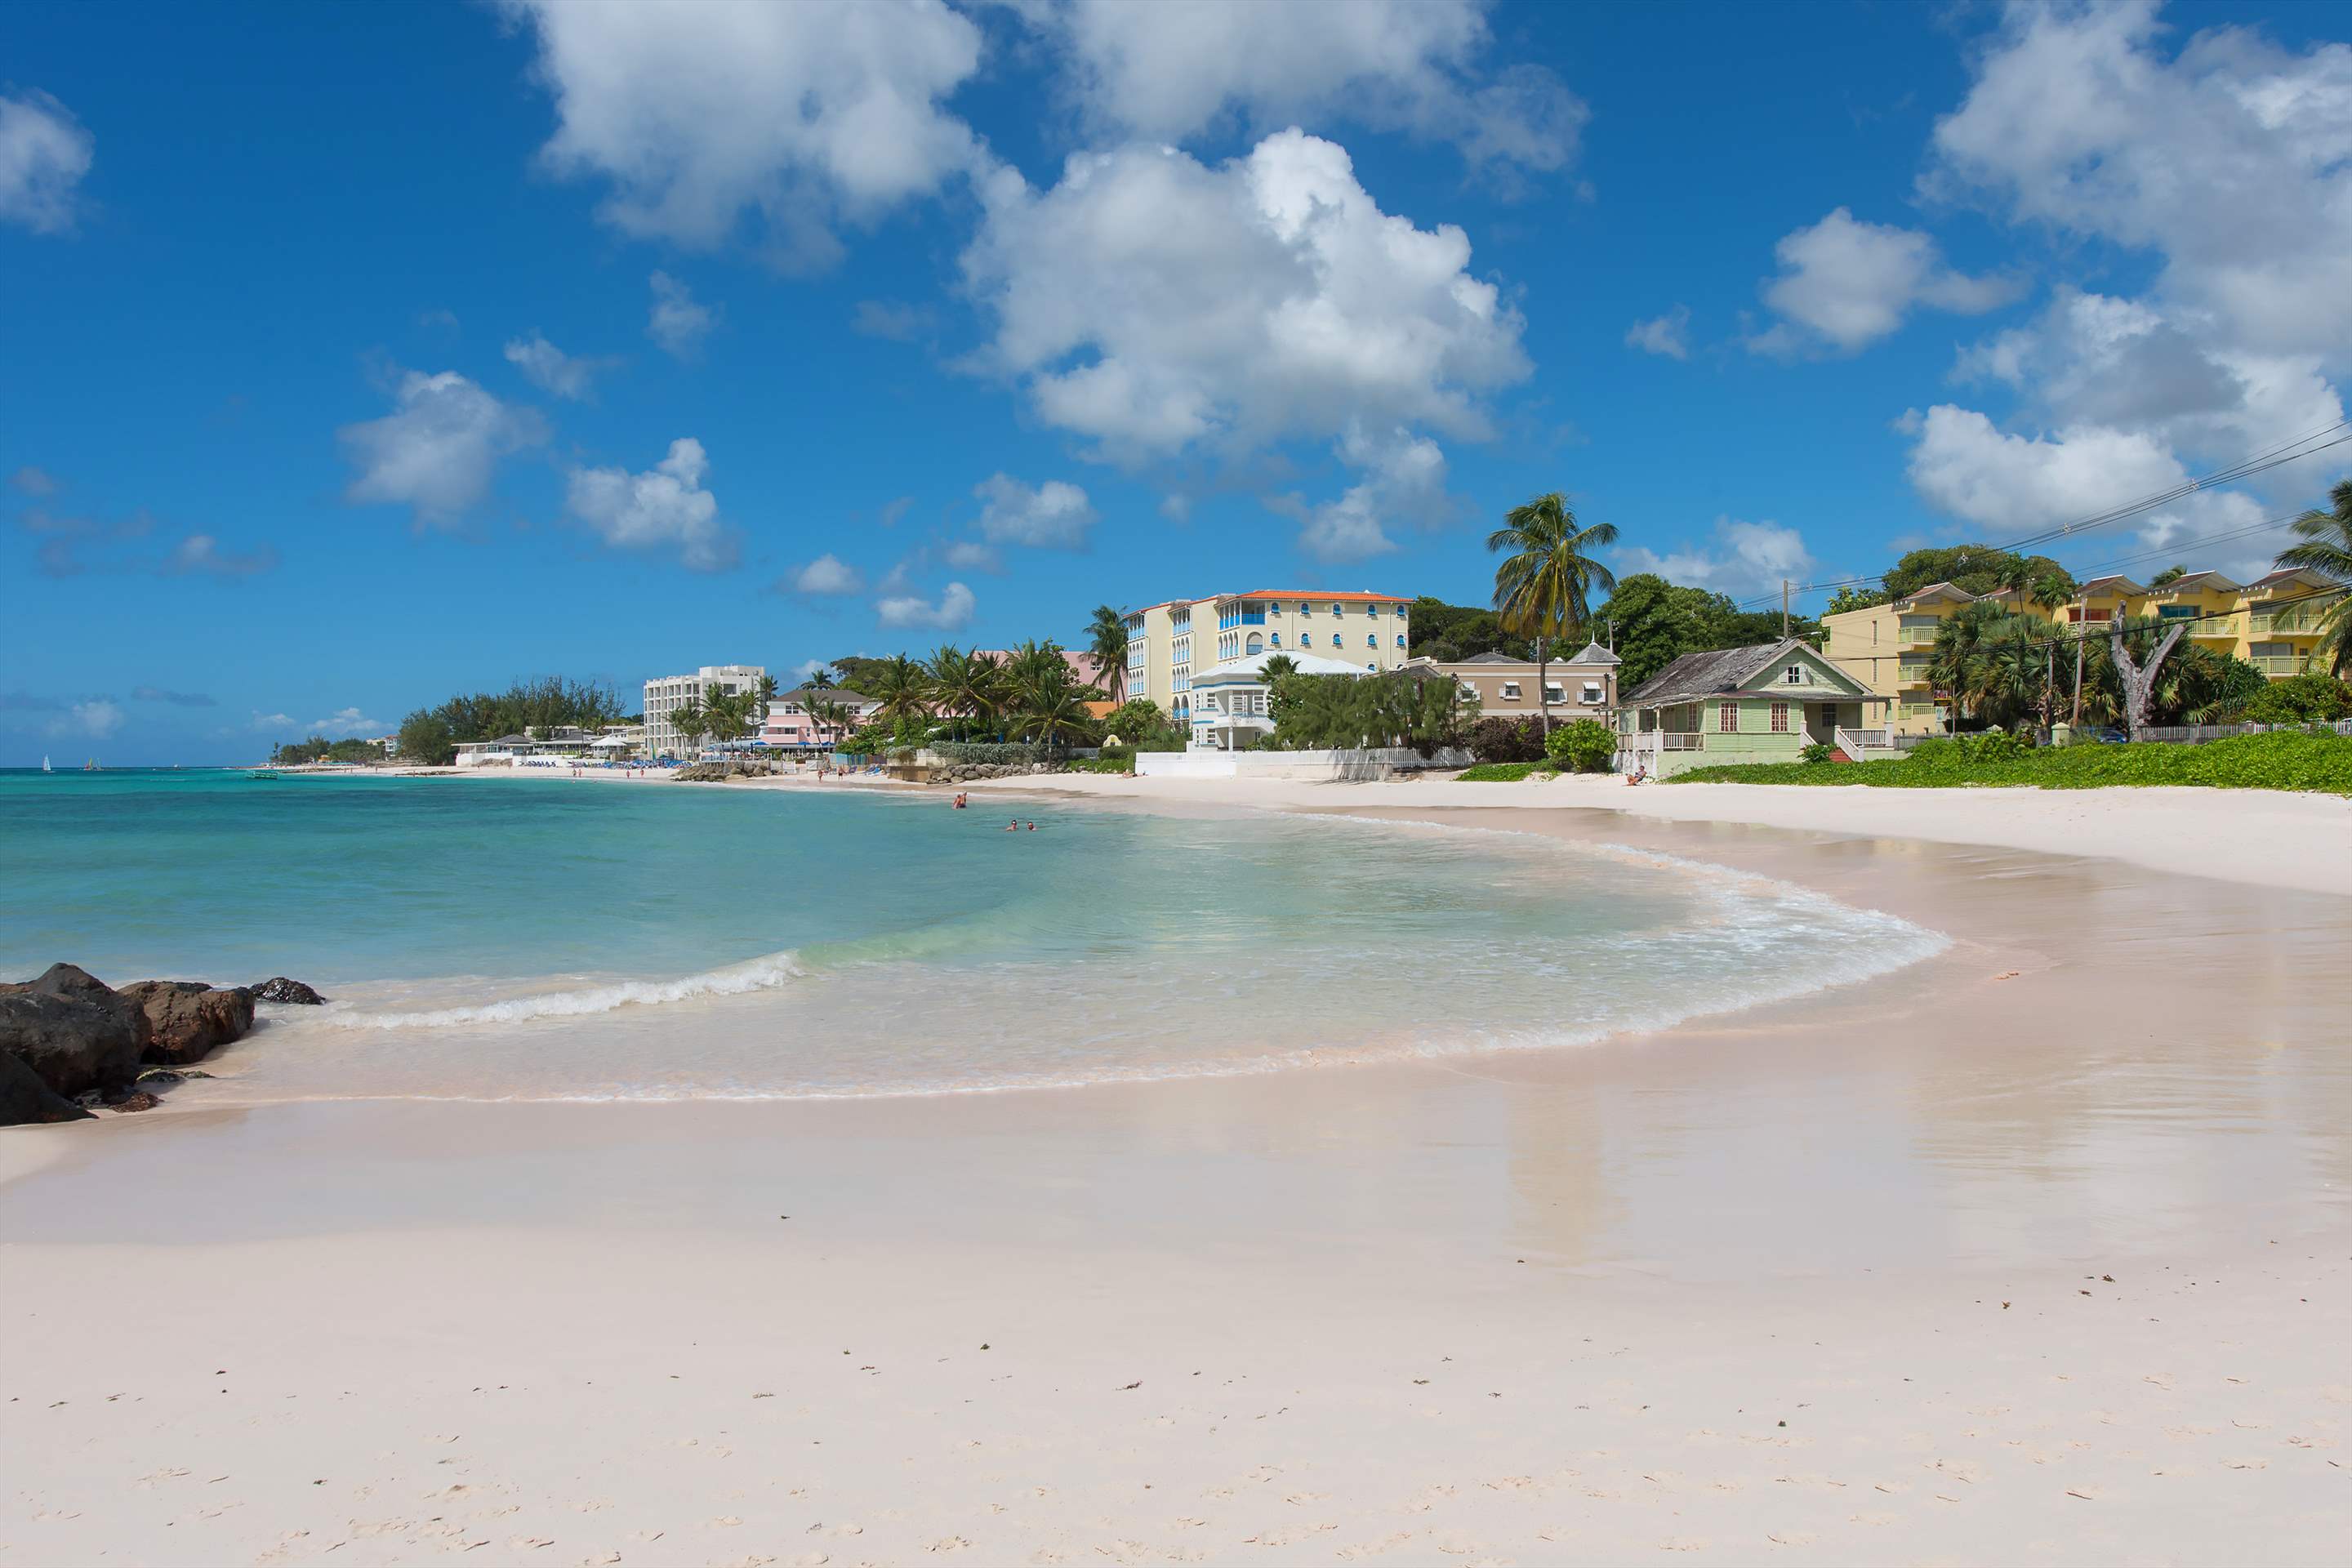 Maxwell Beach Villas 402, 2 bedroom, 2 bedroom villa in St. Lawrence Gap & South Coast, Barbados Photo #8